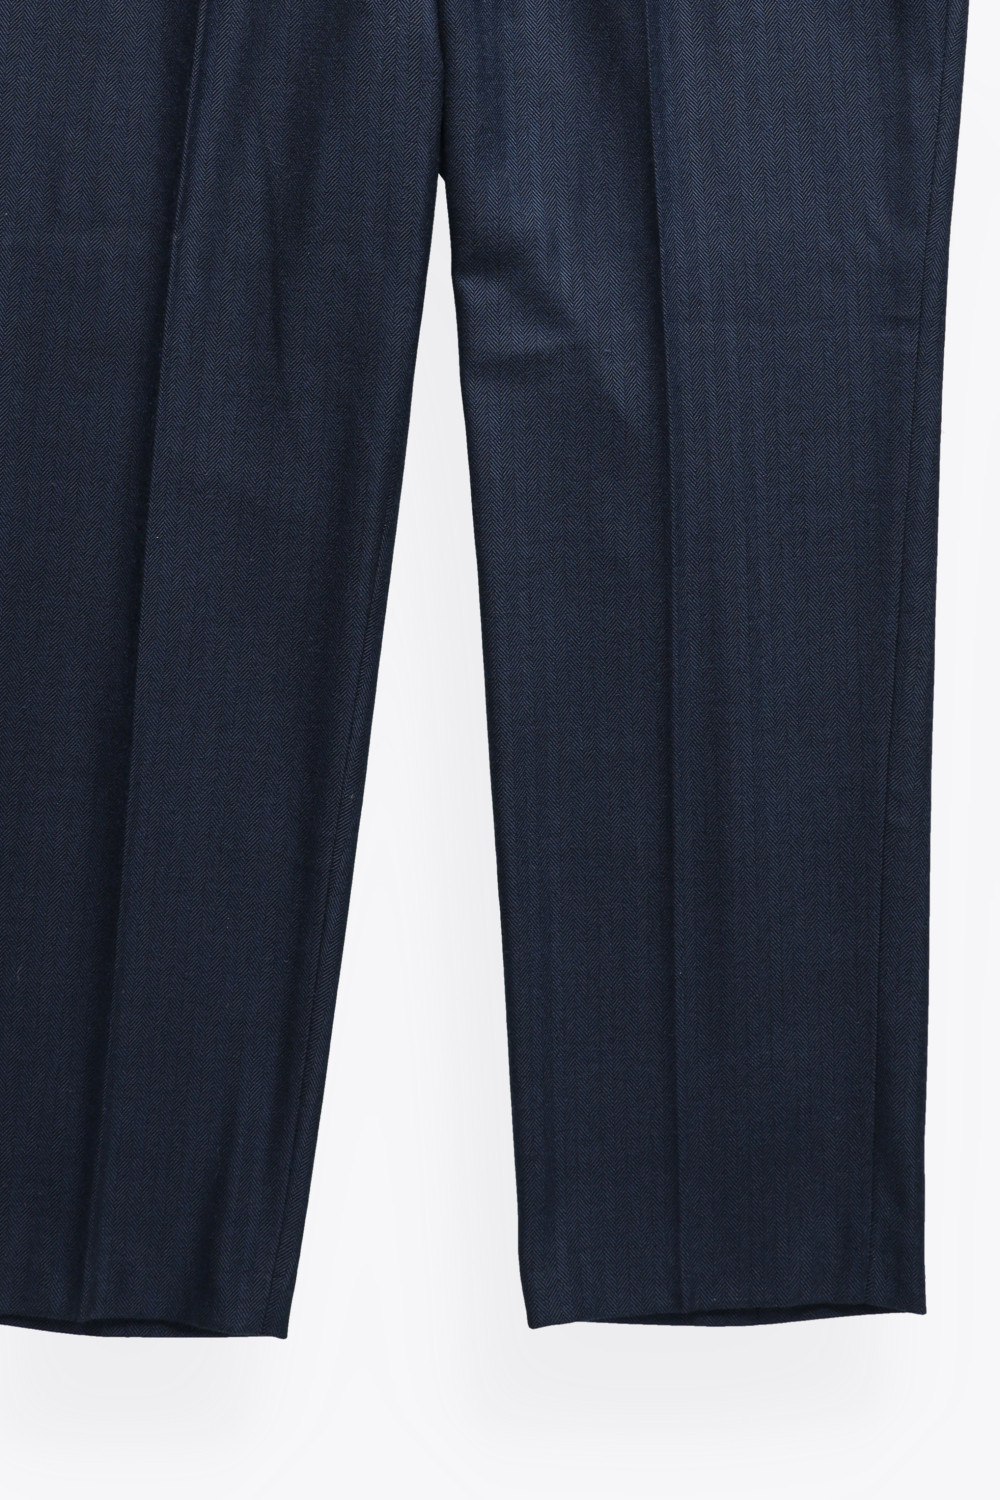 granatowe eleganckie spodnie prosta nogawka